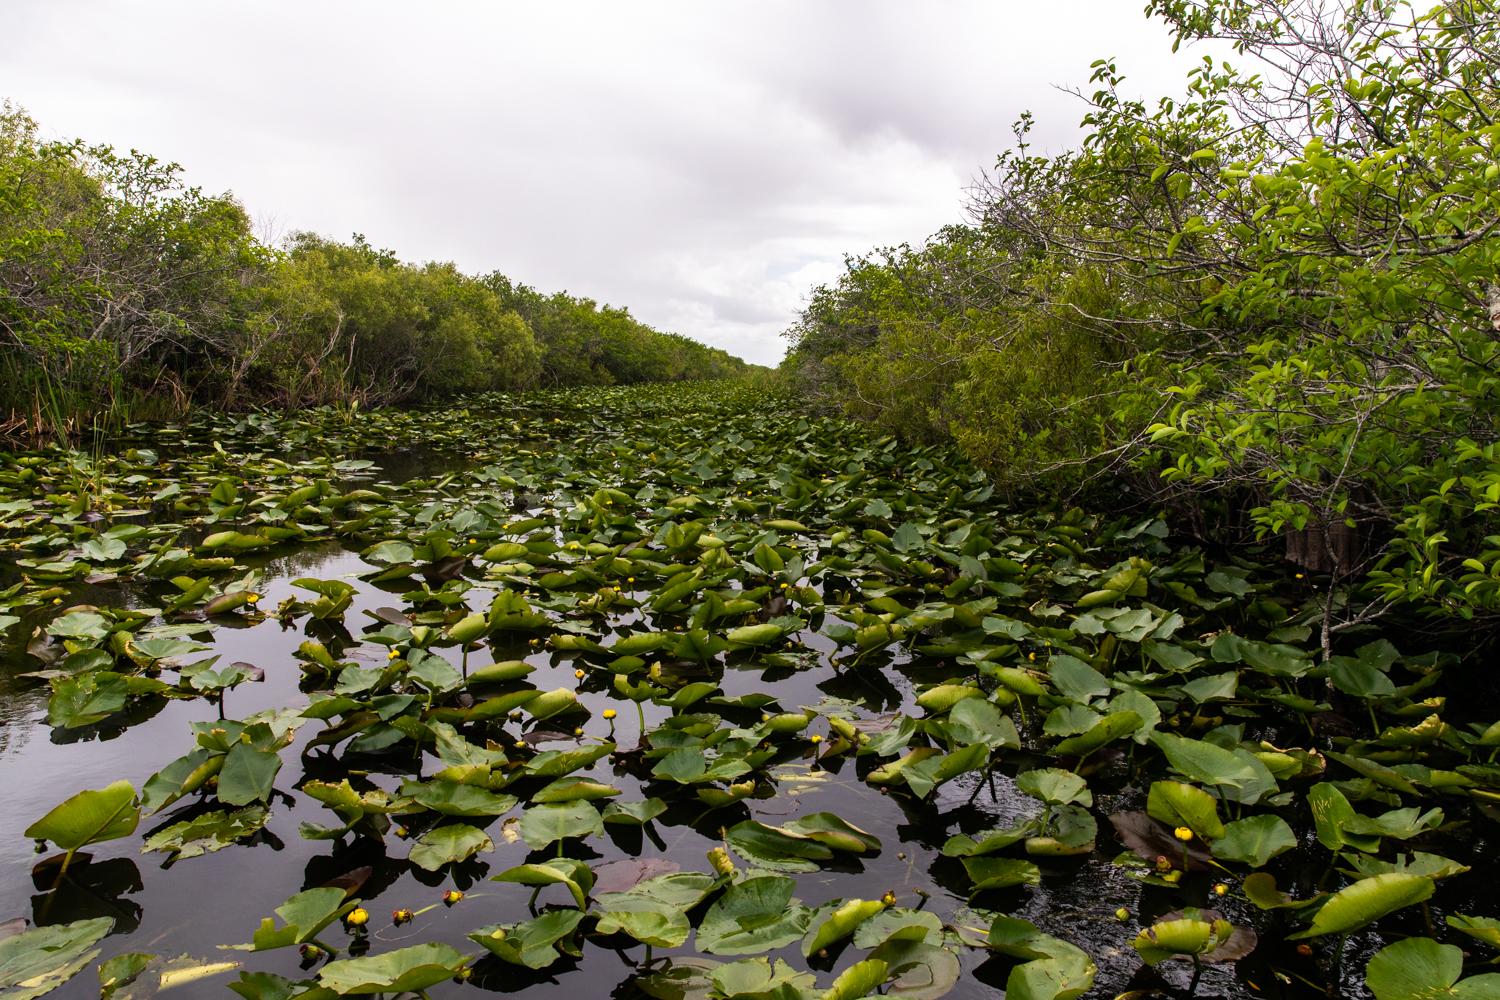 America - Everglades National Park, Florida